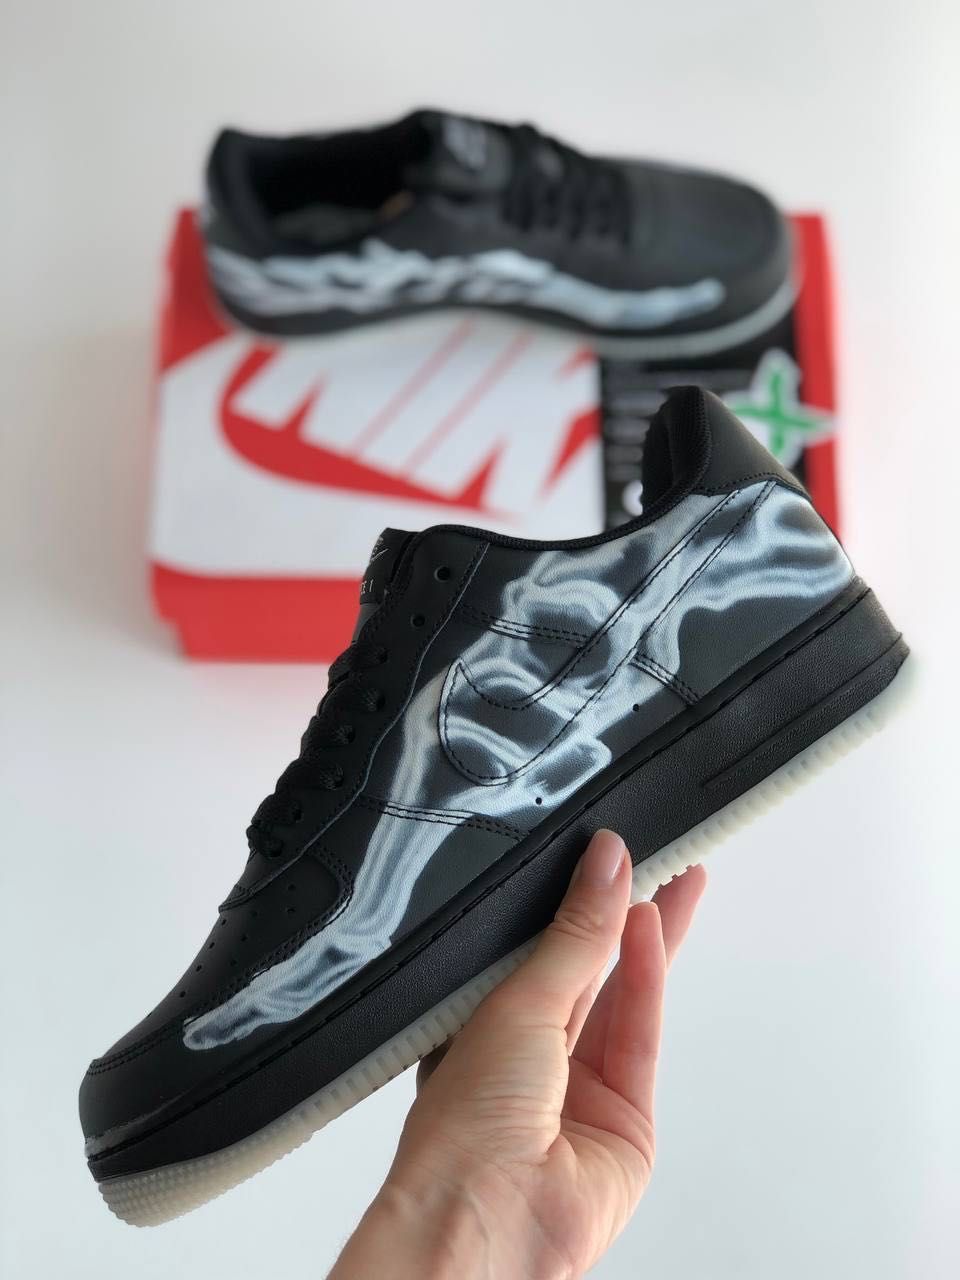 Мужские кроссовки Nike Air Force 1 low Skeleton black. Размеры 40-45